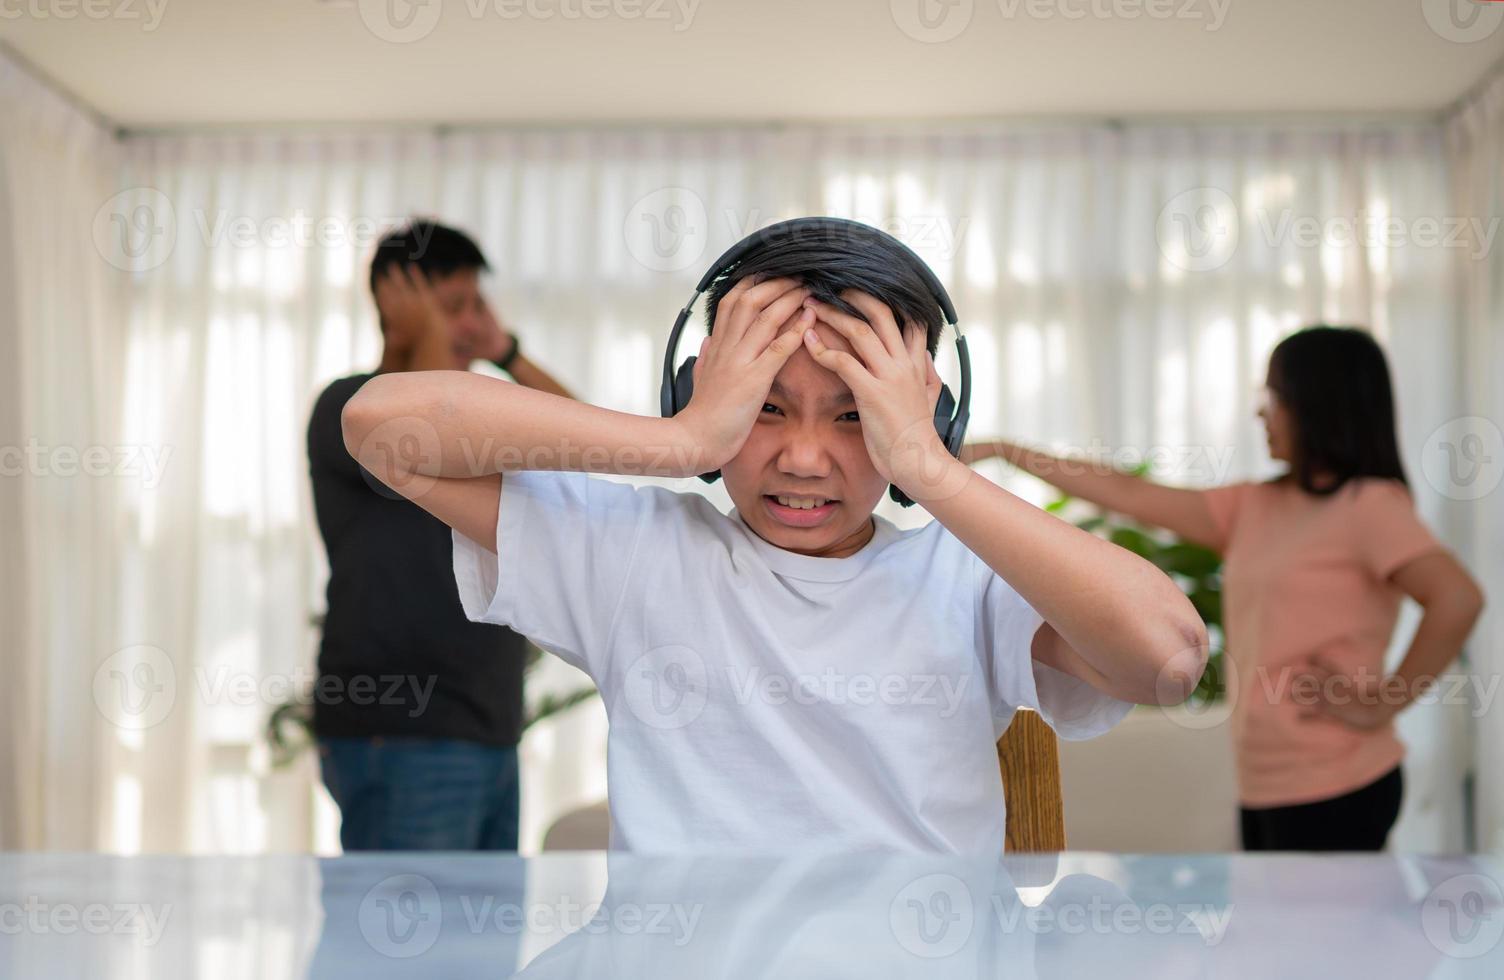 asiatischer junge, der kopfhörer trägt und laute musik spielt. um keinen Streit zu hören, während Eltern zu Hause kämpfen oder streiten. unglückliches Problem in der Familie, häusliche Probleme in der Familie. foto